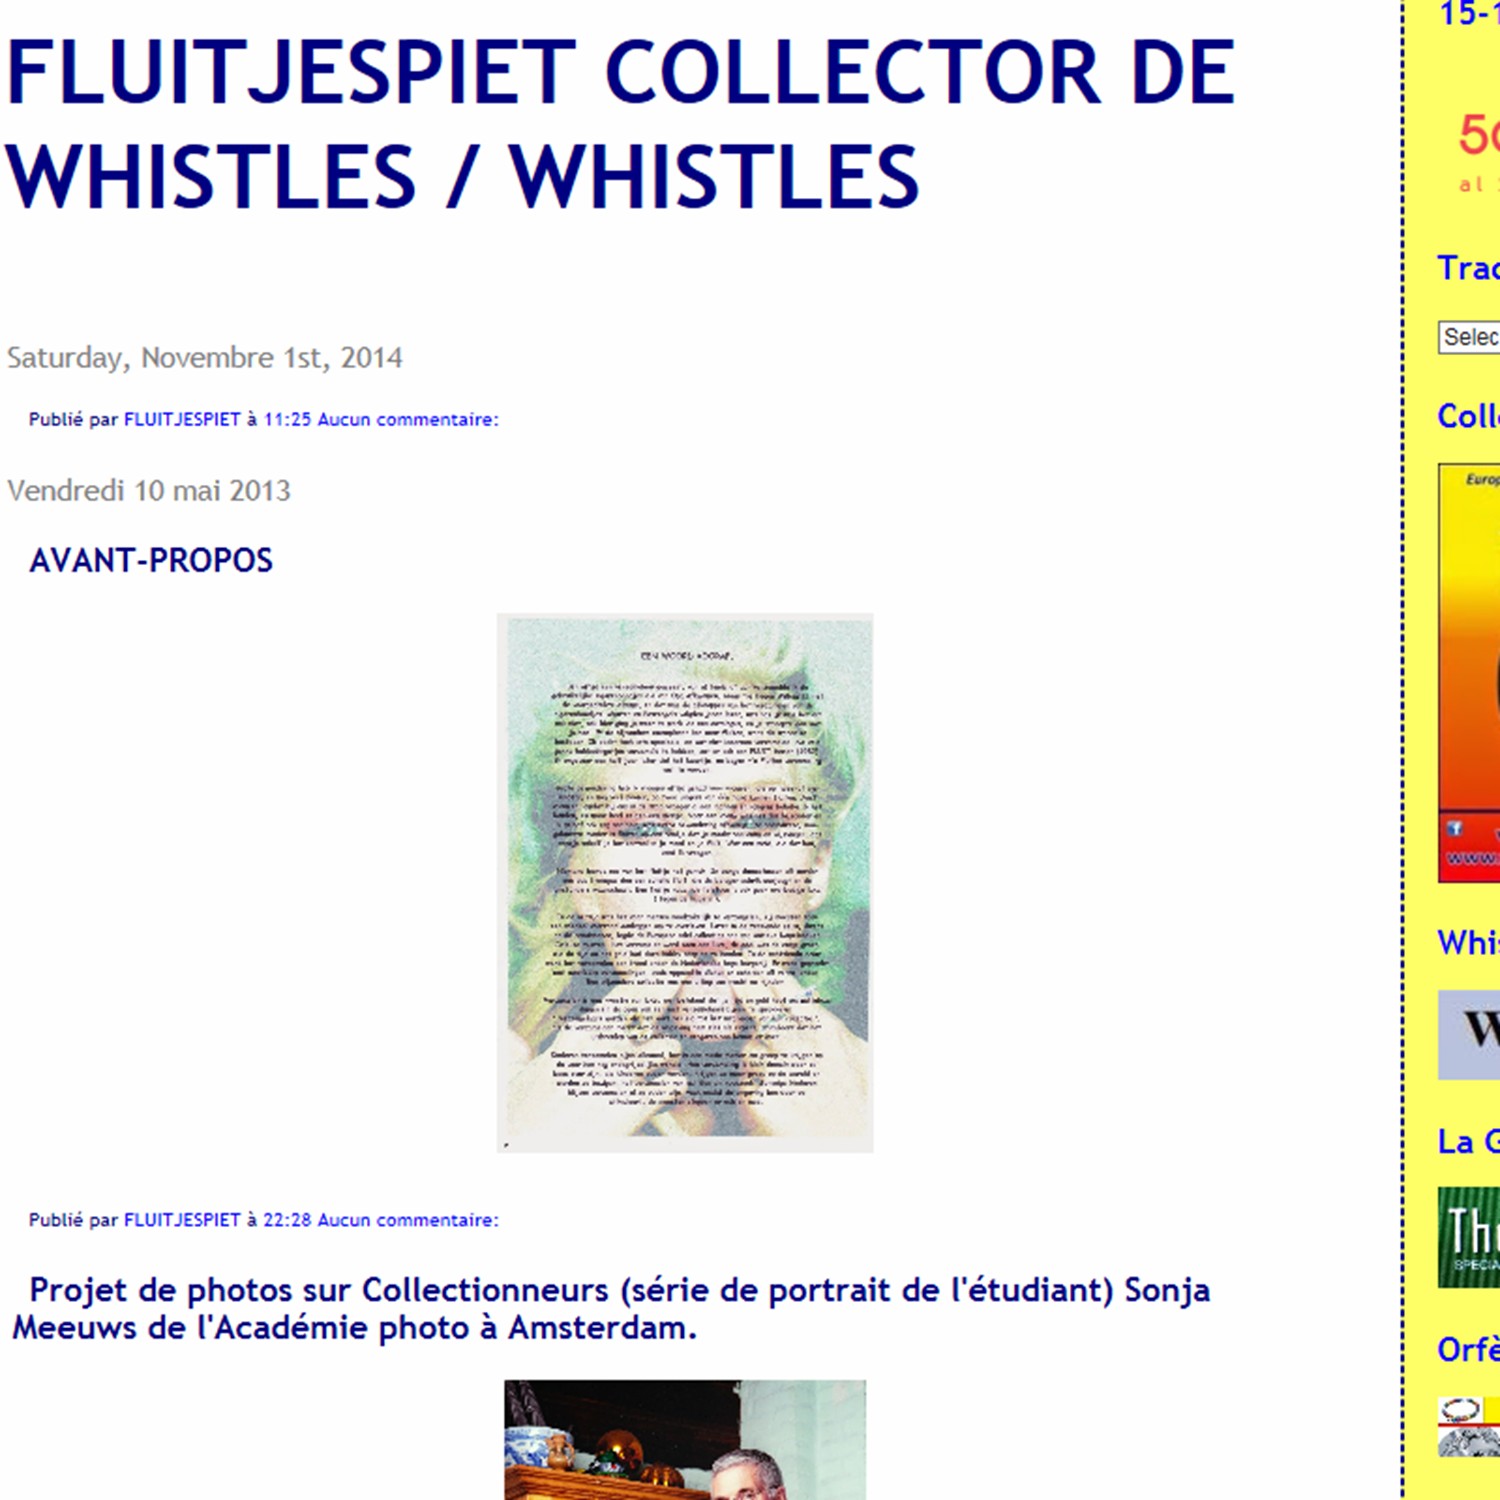 Fluitjespiet whistle collector